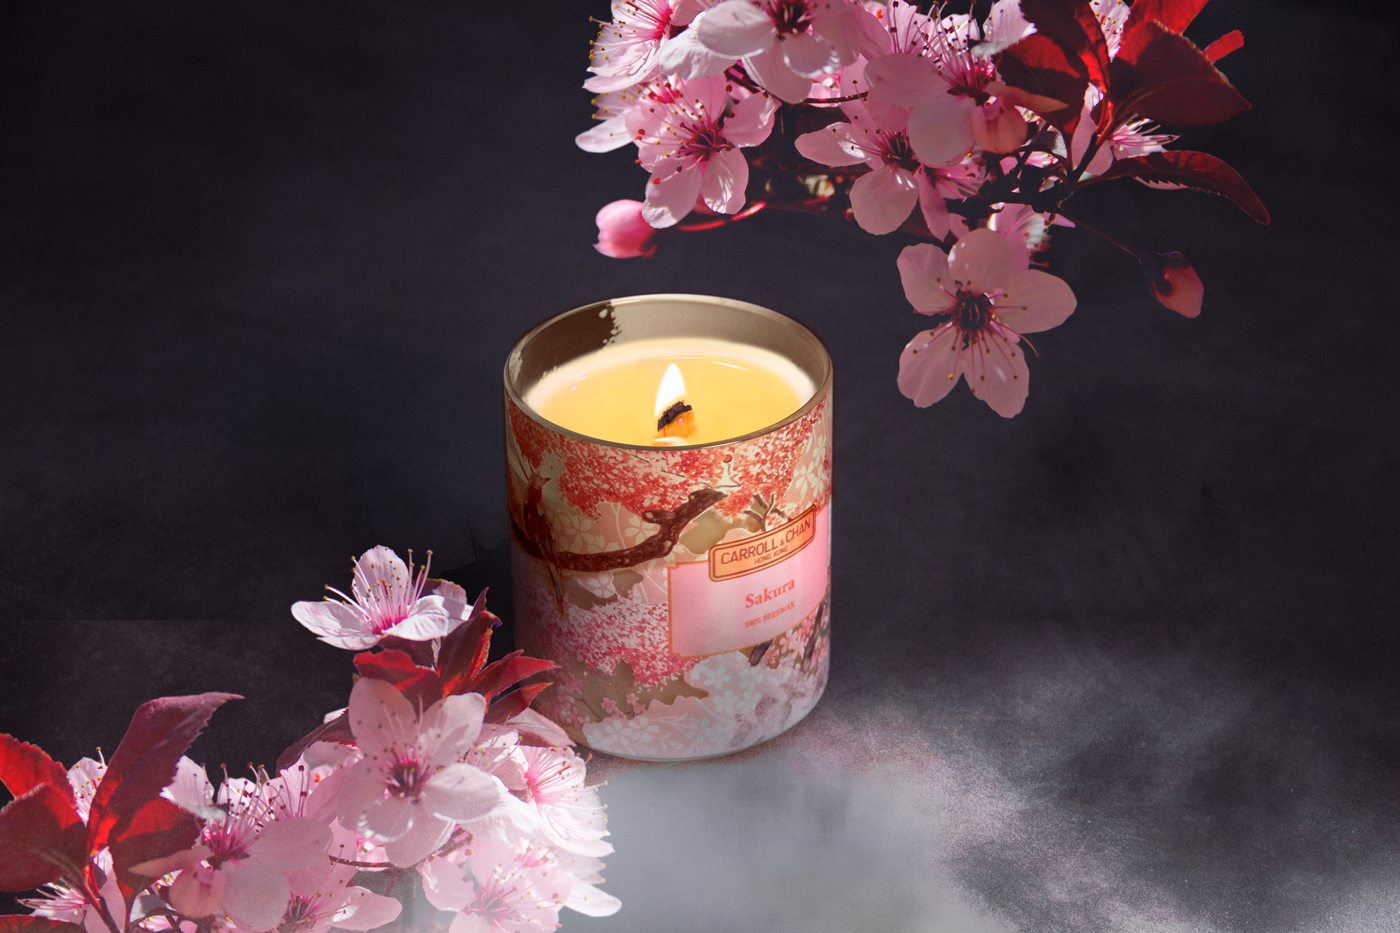 Japanese Sakura 100% Beesewax candle